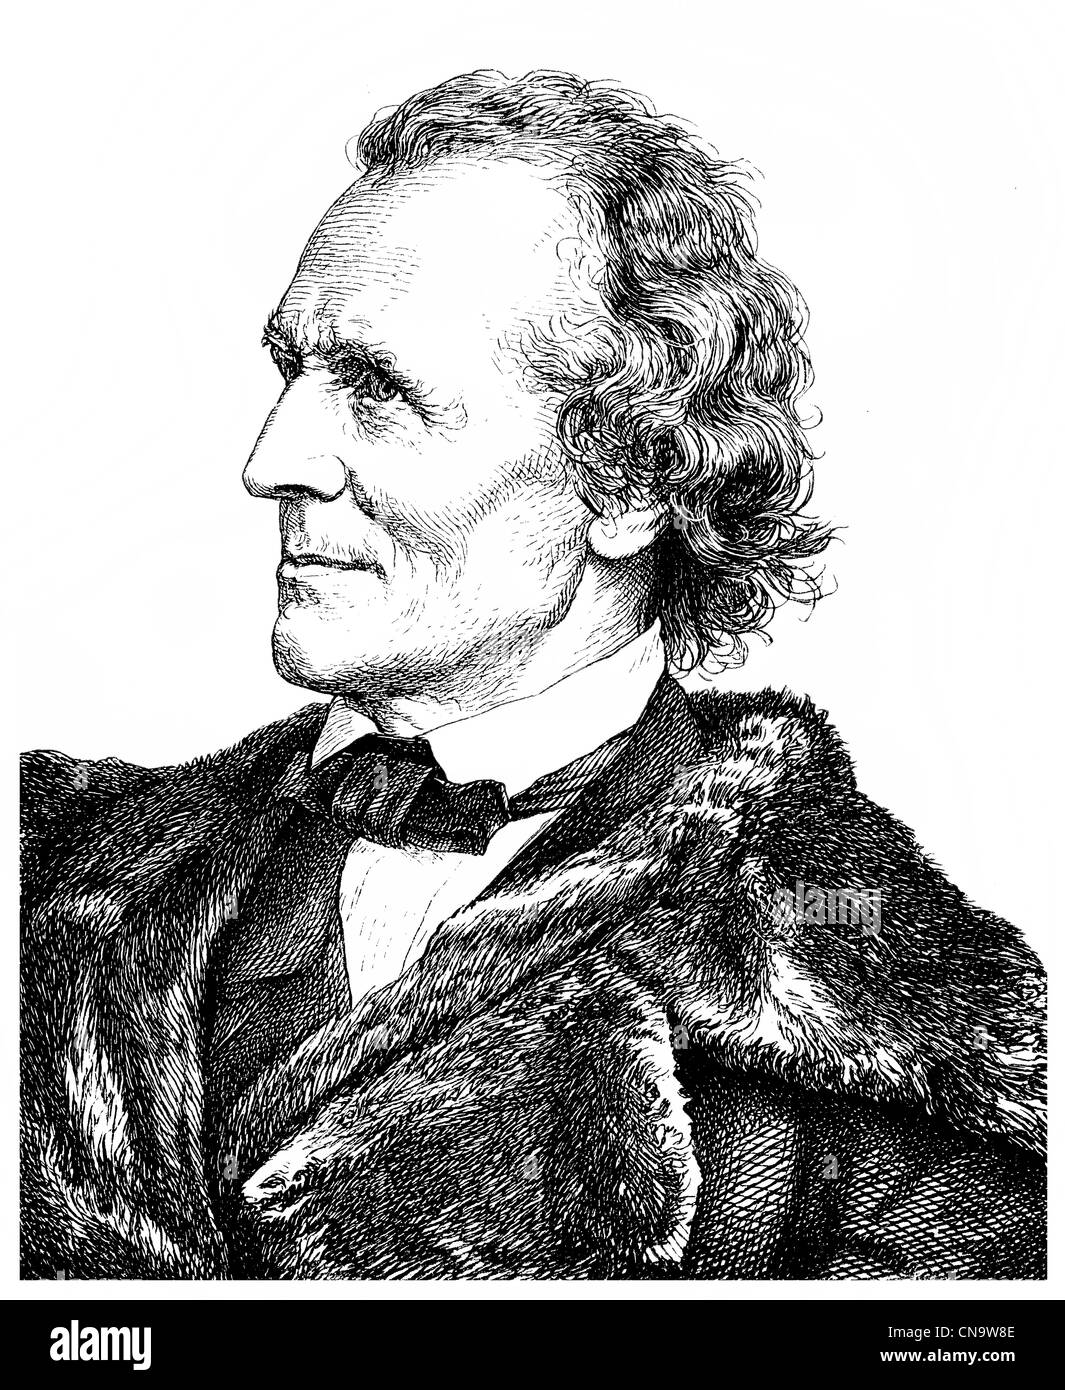 Historische Zeichnung, Julius Schnorr von Carolsfeld, 1794-1872, Maler und Direktor der Gemäldegalerie Dresden Stockfoto